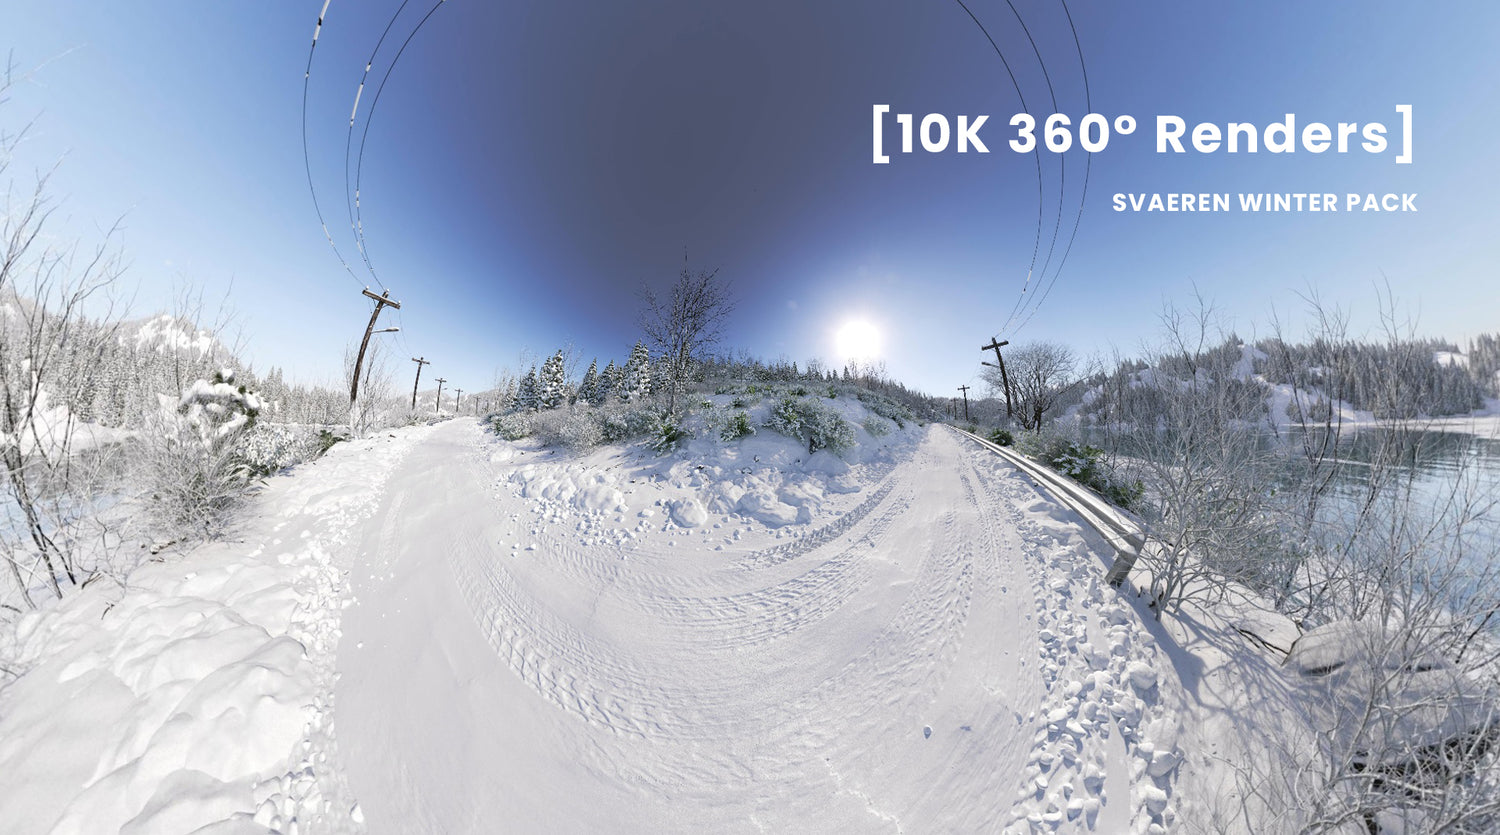 10K 360° Renders of Svaeren Winter Pack